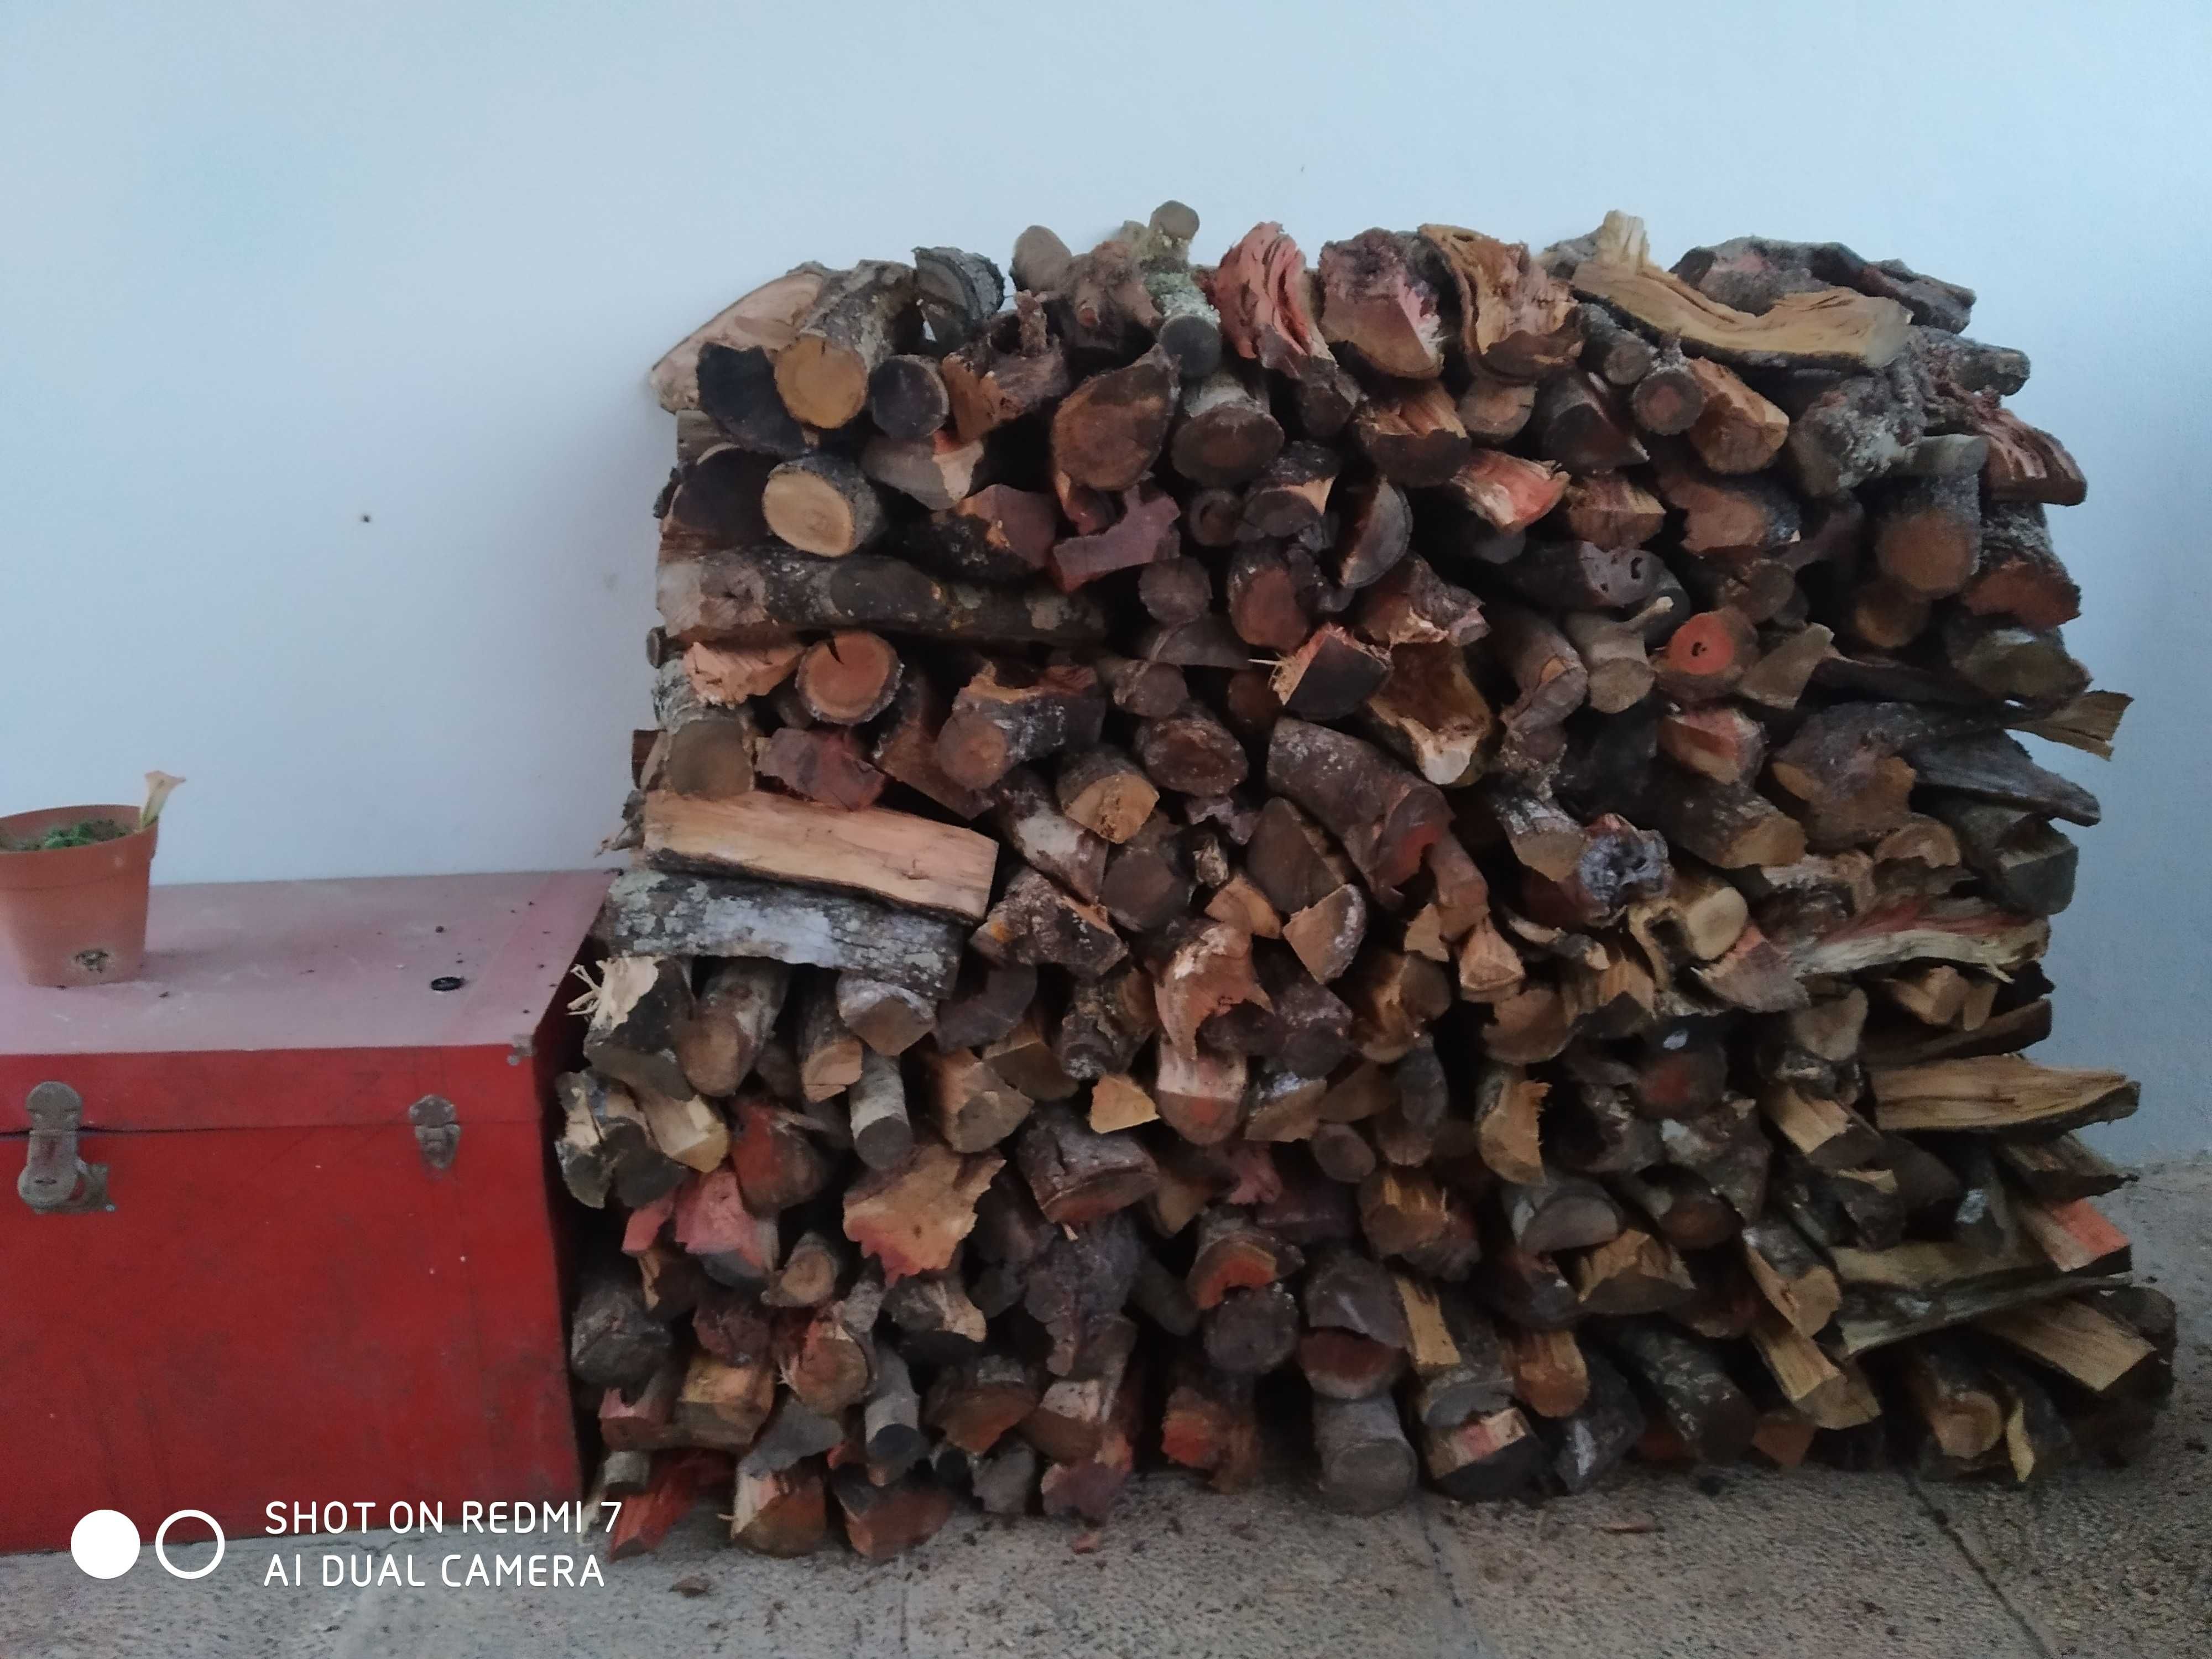 Lenha /Firewood para lareiras